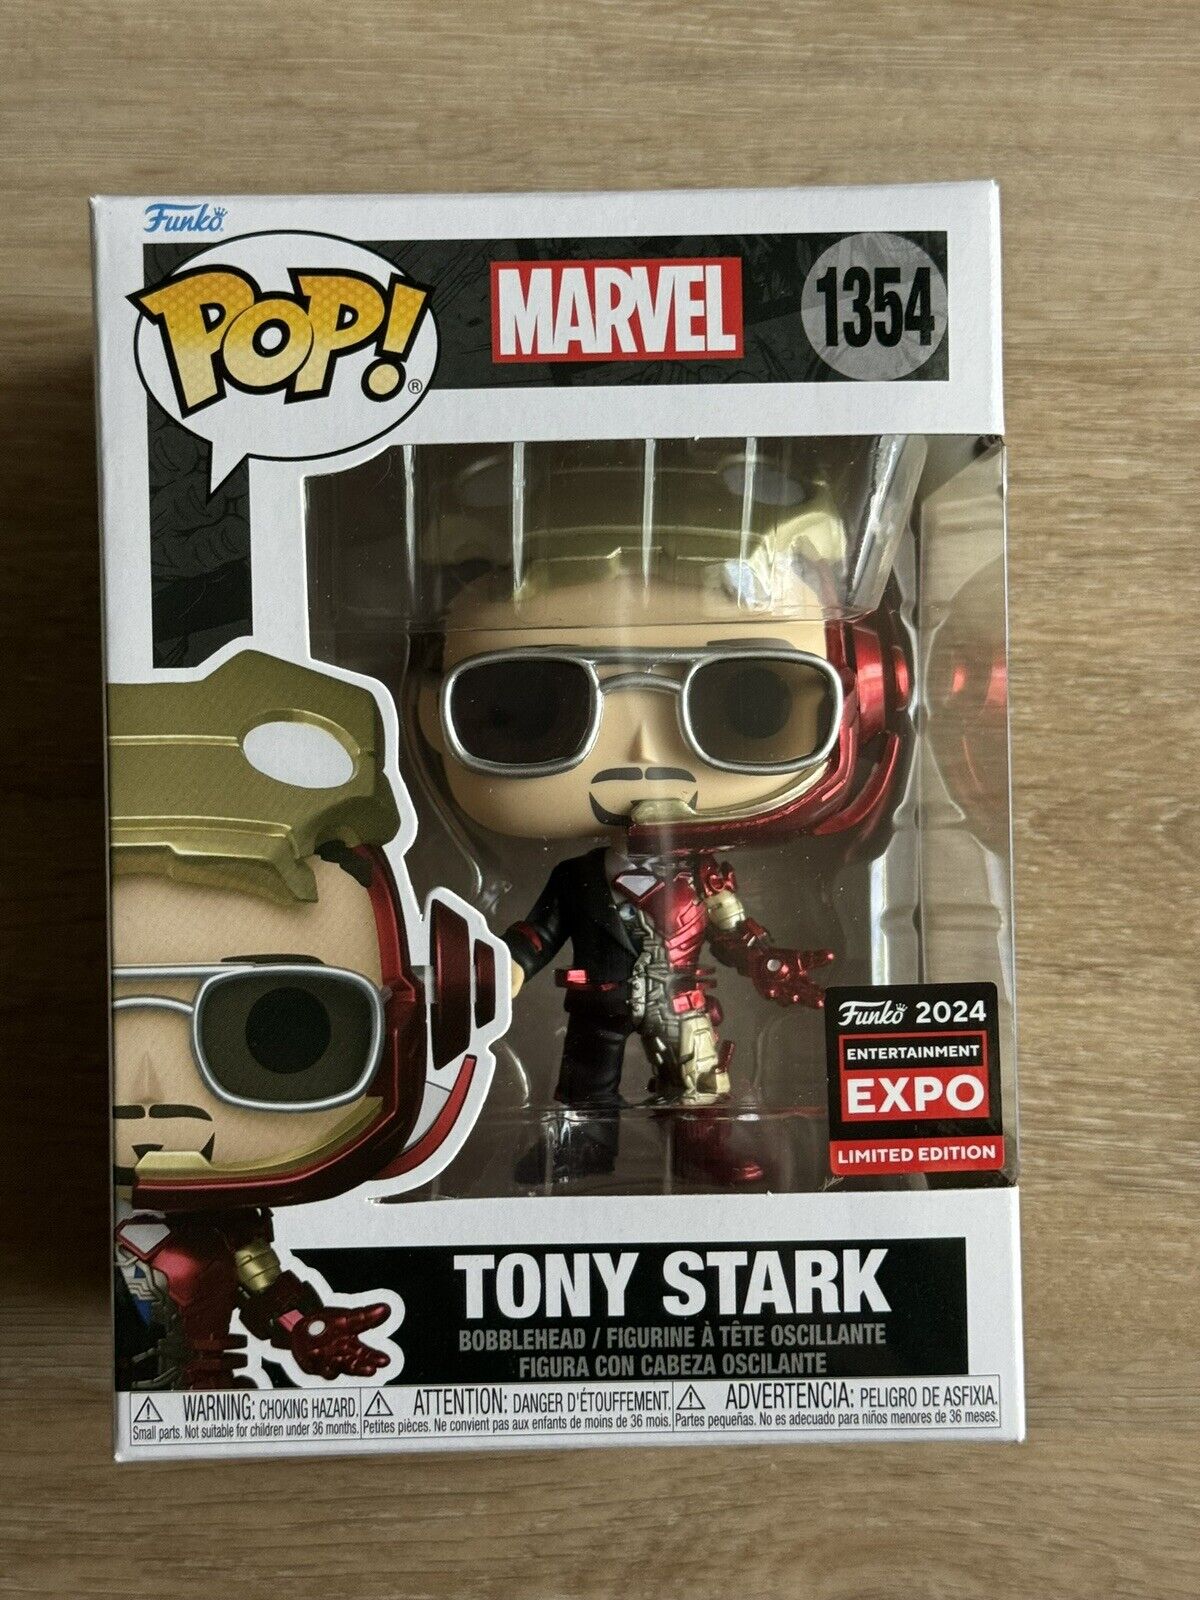 IN HAND C2E2 SHARED EXPO STICKER Tony Stark Iron Man Funko Pop #1354 Marvel